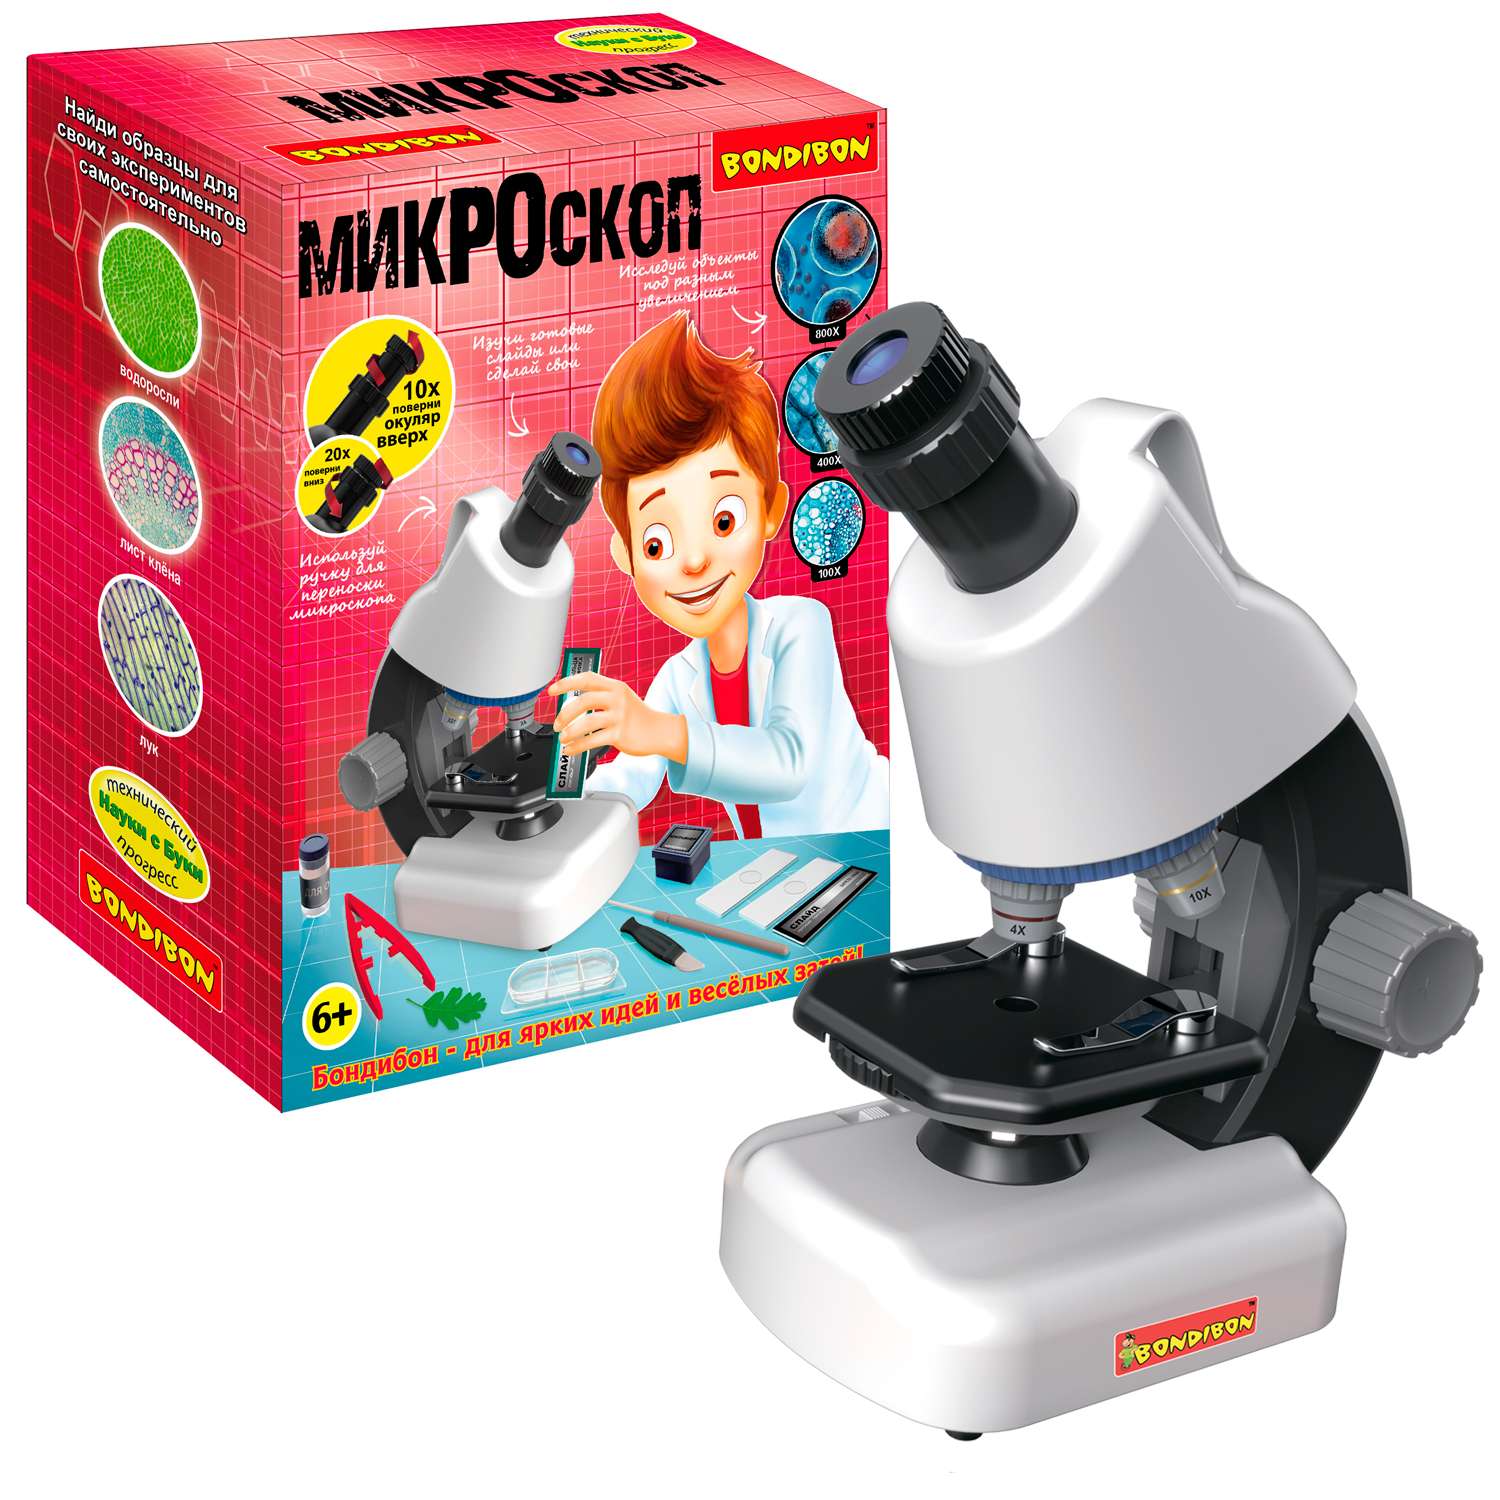 Микроскоп BONDIBON 40-800X с подсветкой и светофильтрами переносная ручка серия Науки с Буки - фото 1